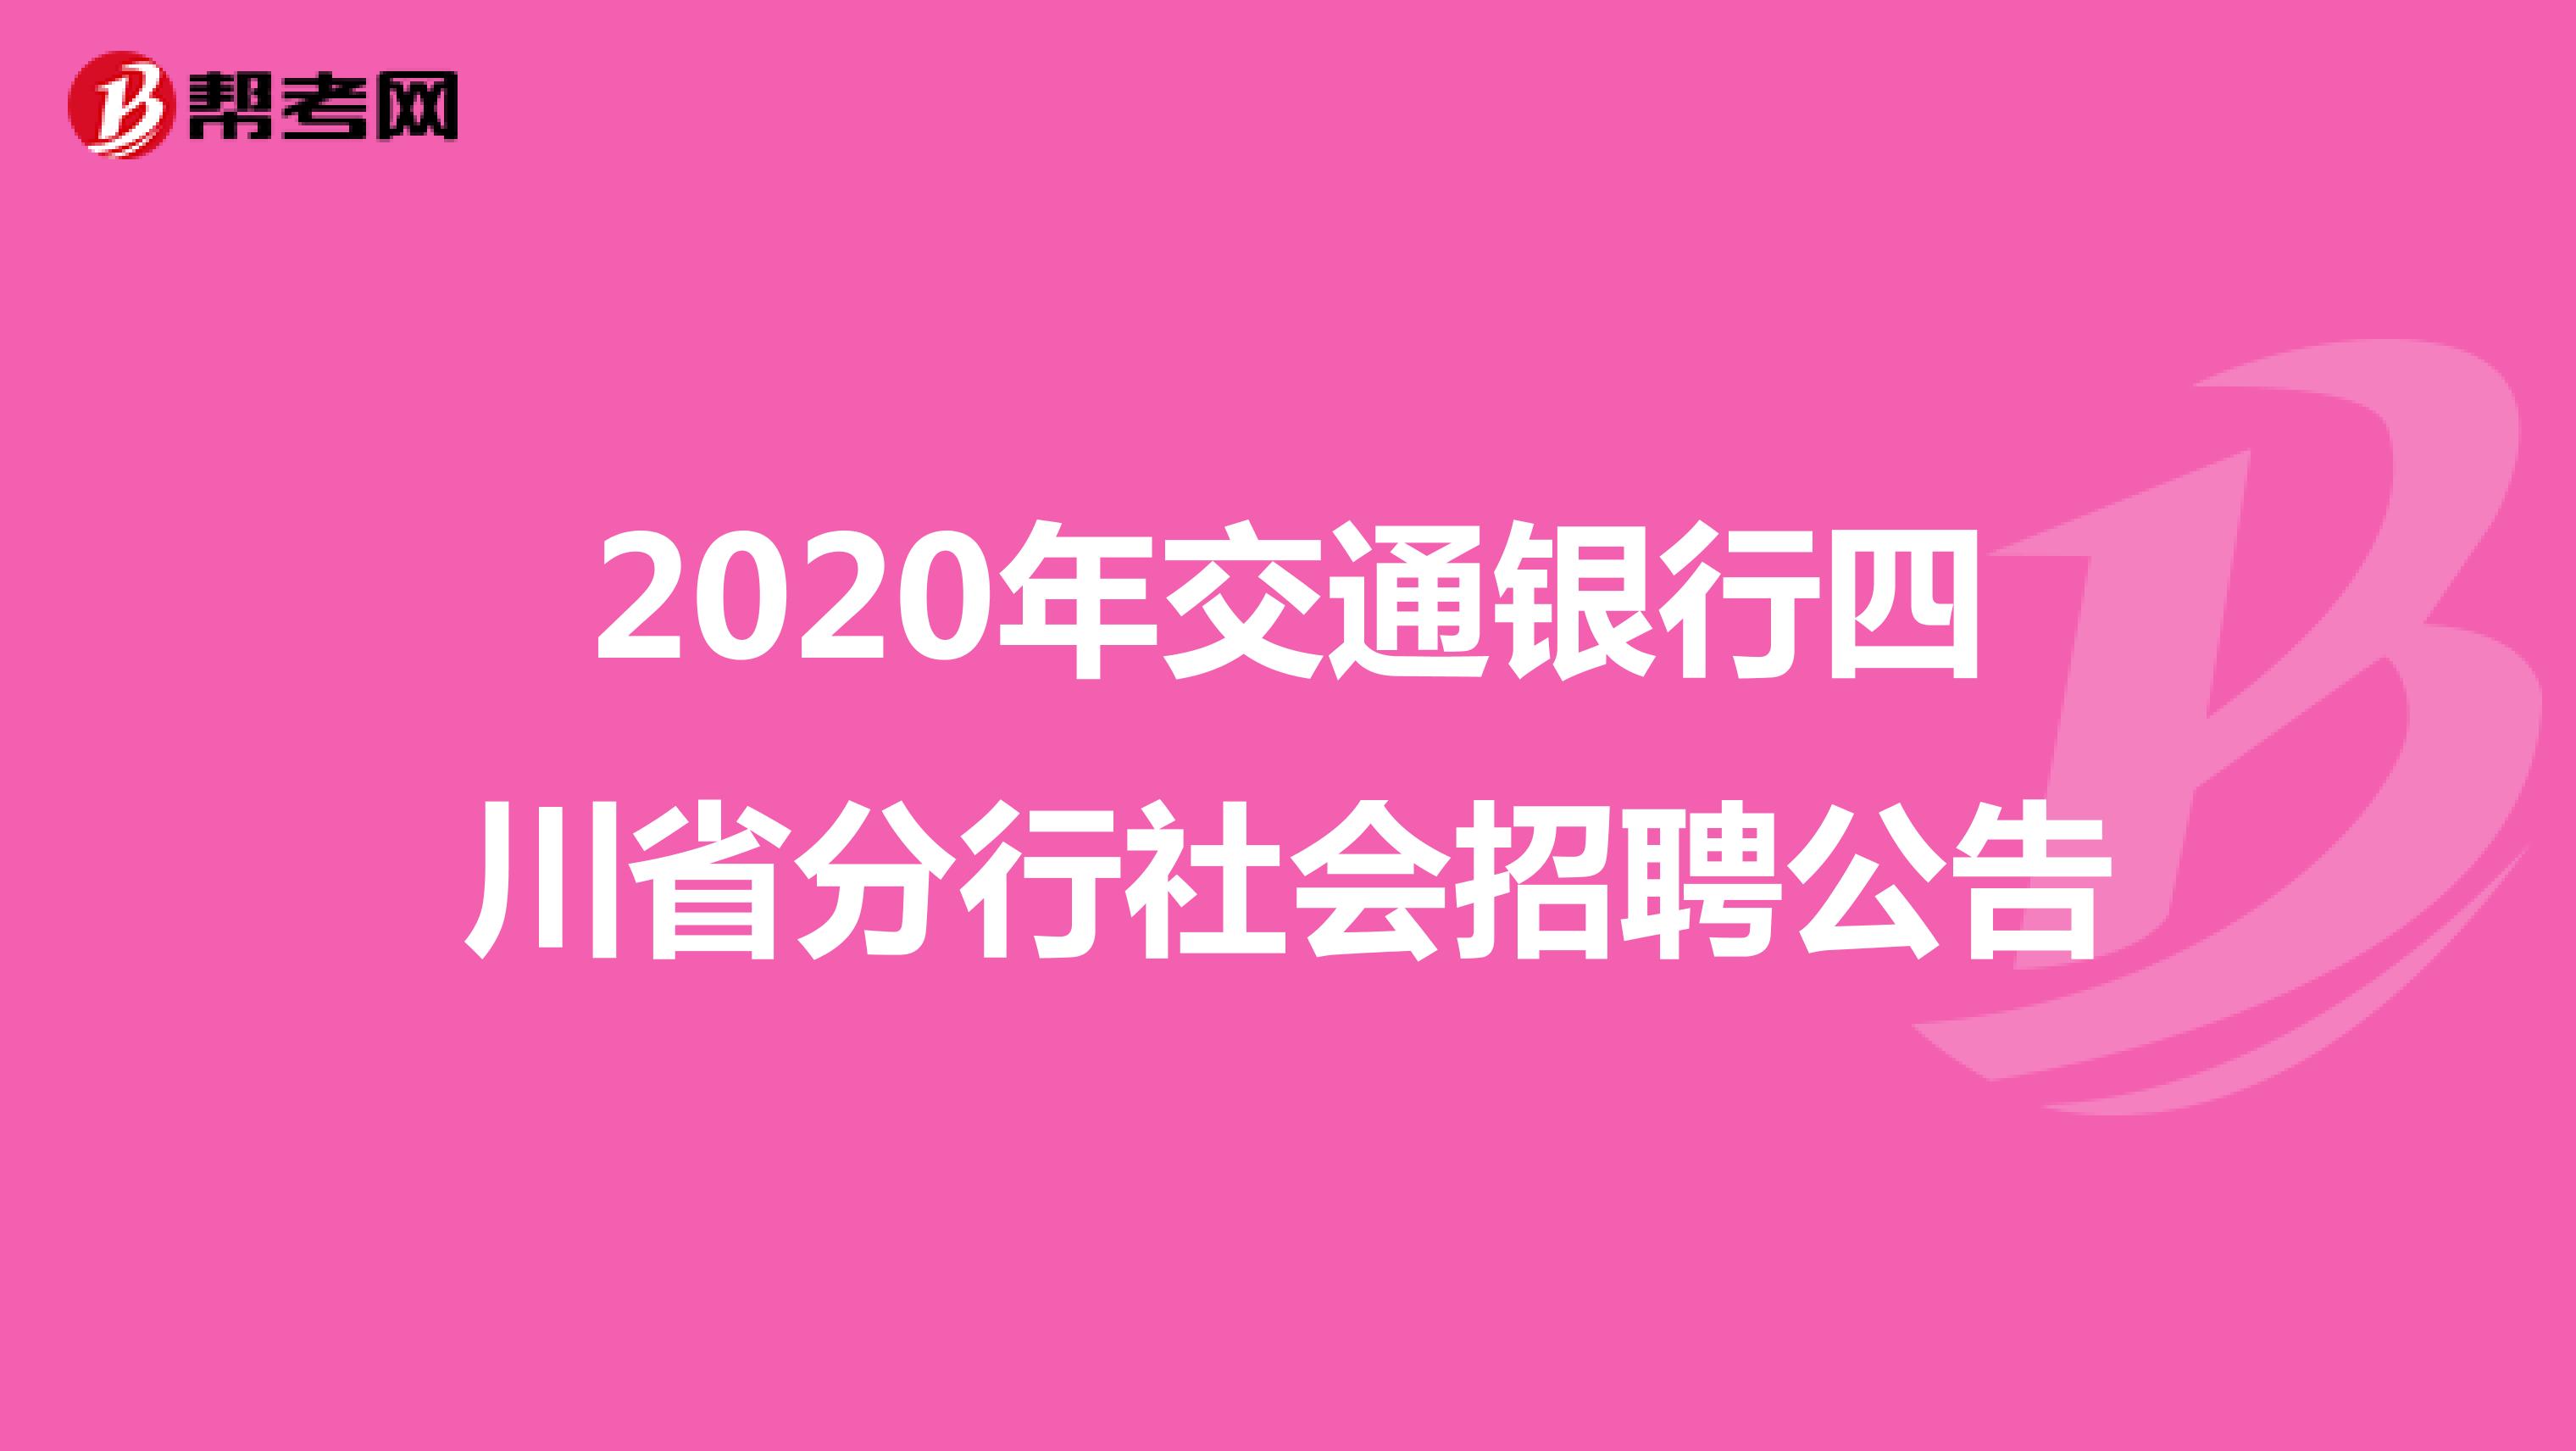 2020年交通银行四川省分行社会招聘公告